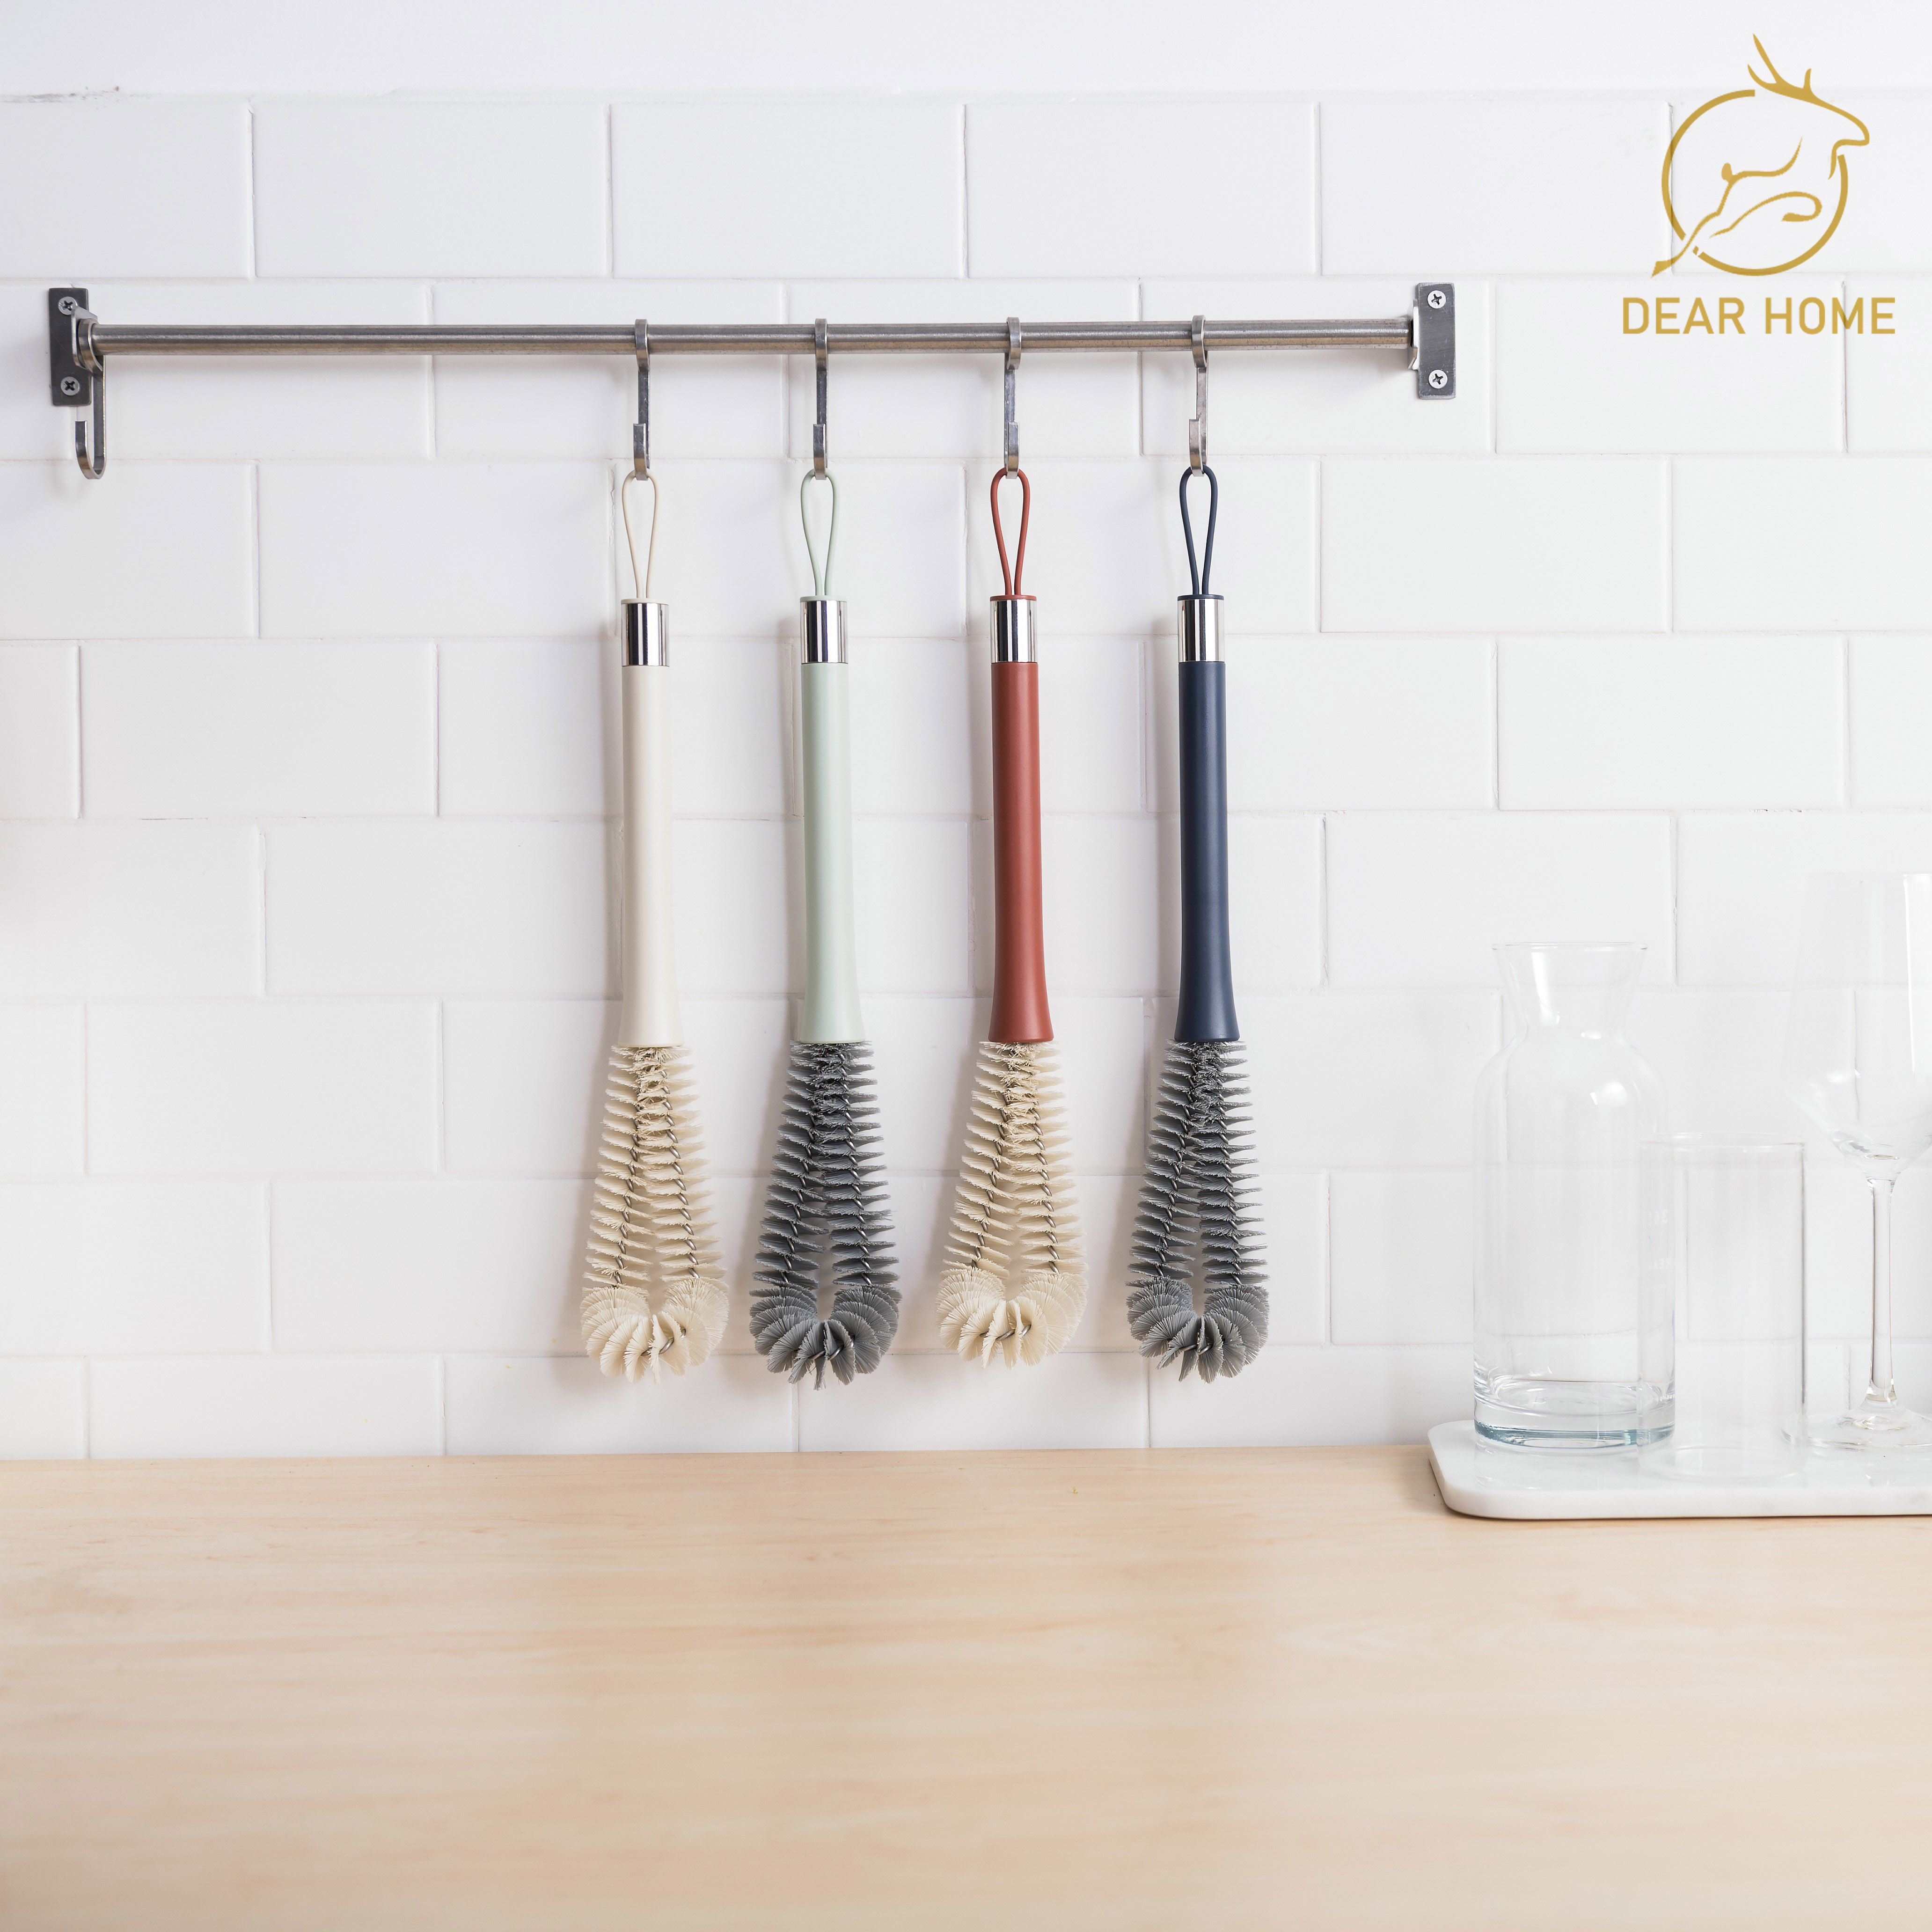 Dear Home แปรงล้างขวดด้ามยาว ทำความสะอาดแก้วน้ำ แปรงใช้ในครัว แปรงล้างขวดน้ำ แปรงขวด แปรงล้าง แปรงทำความสะอาดขวดน้ำ แปรงงล้าง แปรงทำความสะอาดขวดน้ำ แปรง